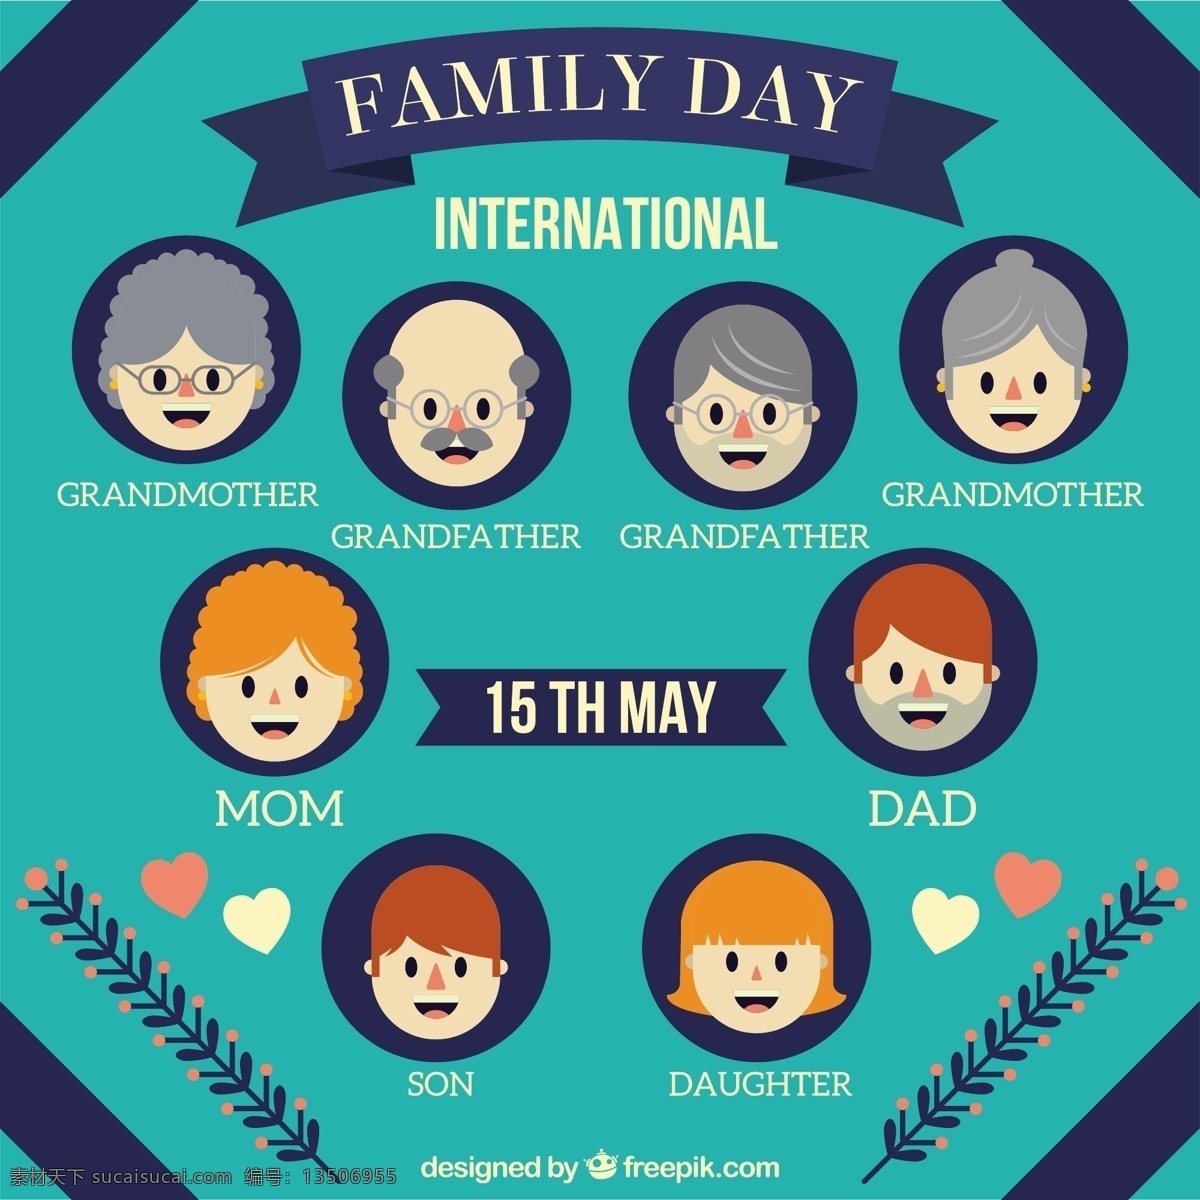 家庭树设计 树 人 爱 家庭 母亲 庆祝 父亲 环境 幸福家庭 幸福 国际 日 关系 生活 姐妹 青色 天蓝色